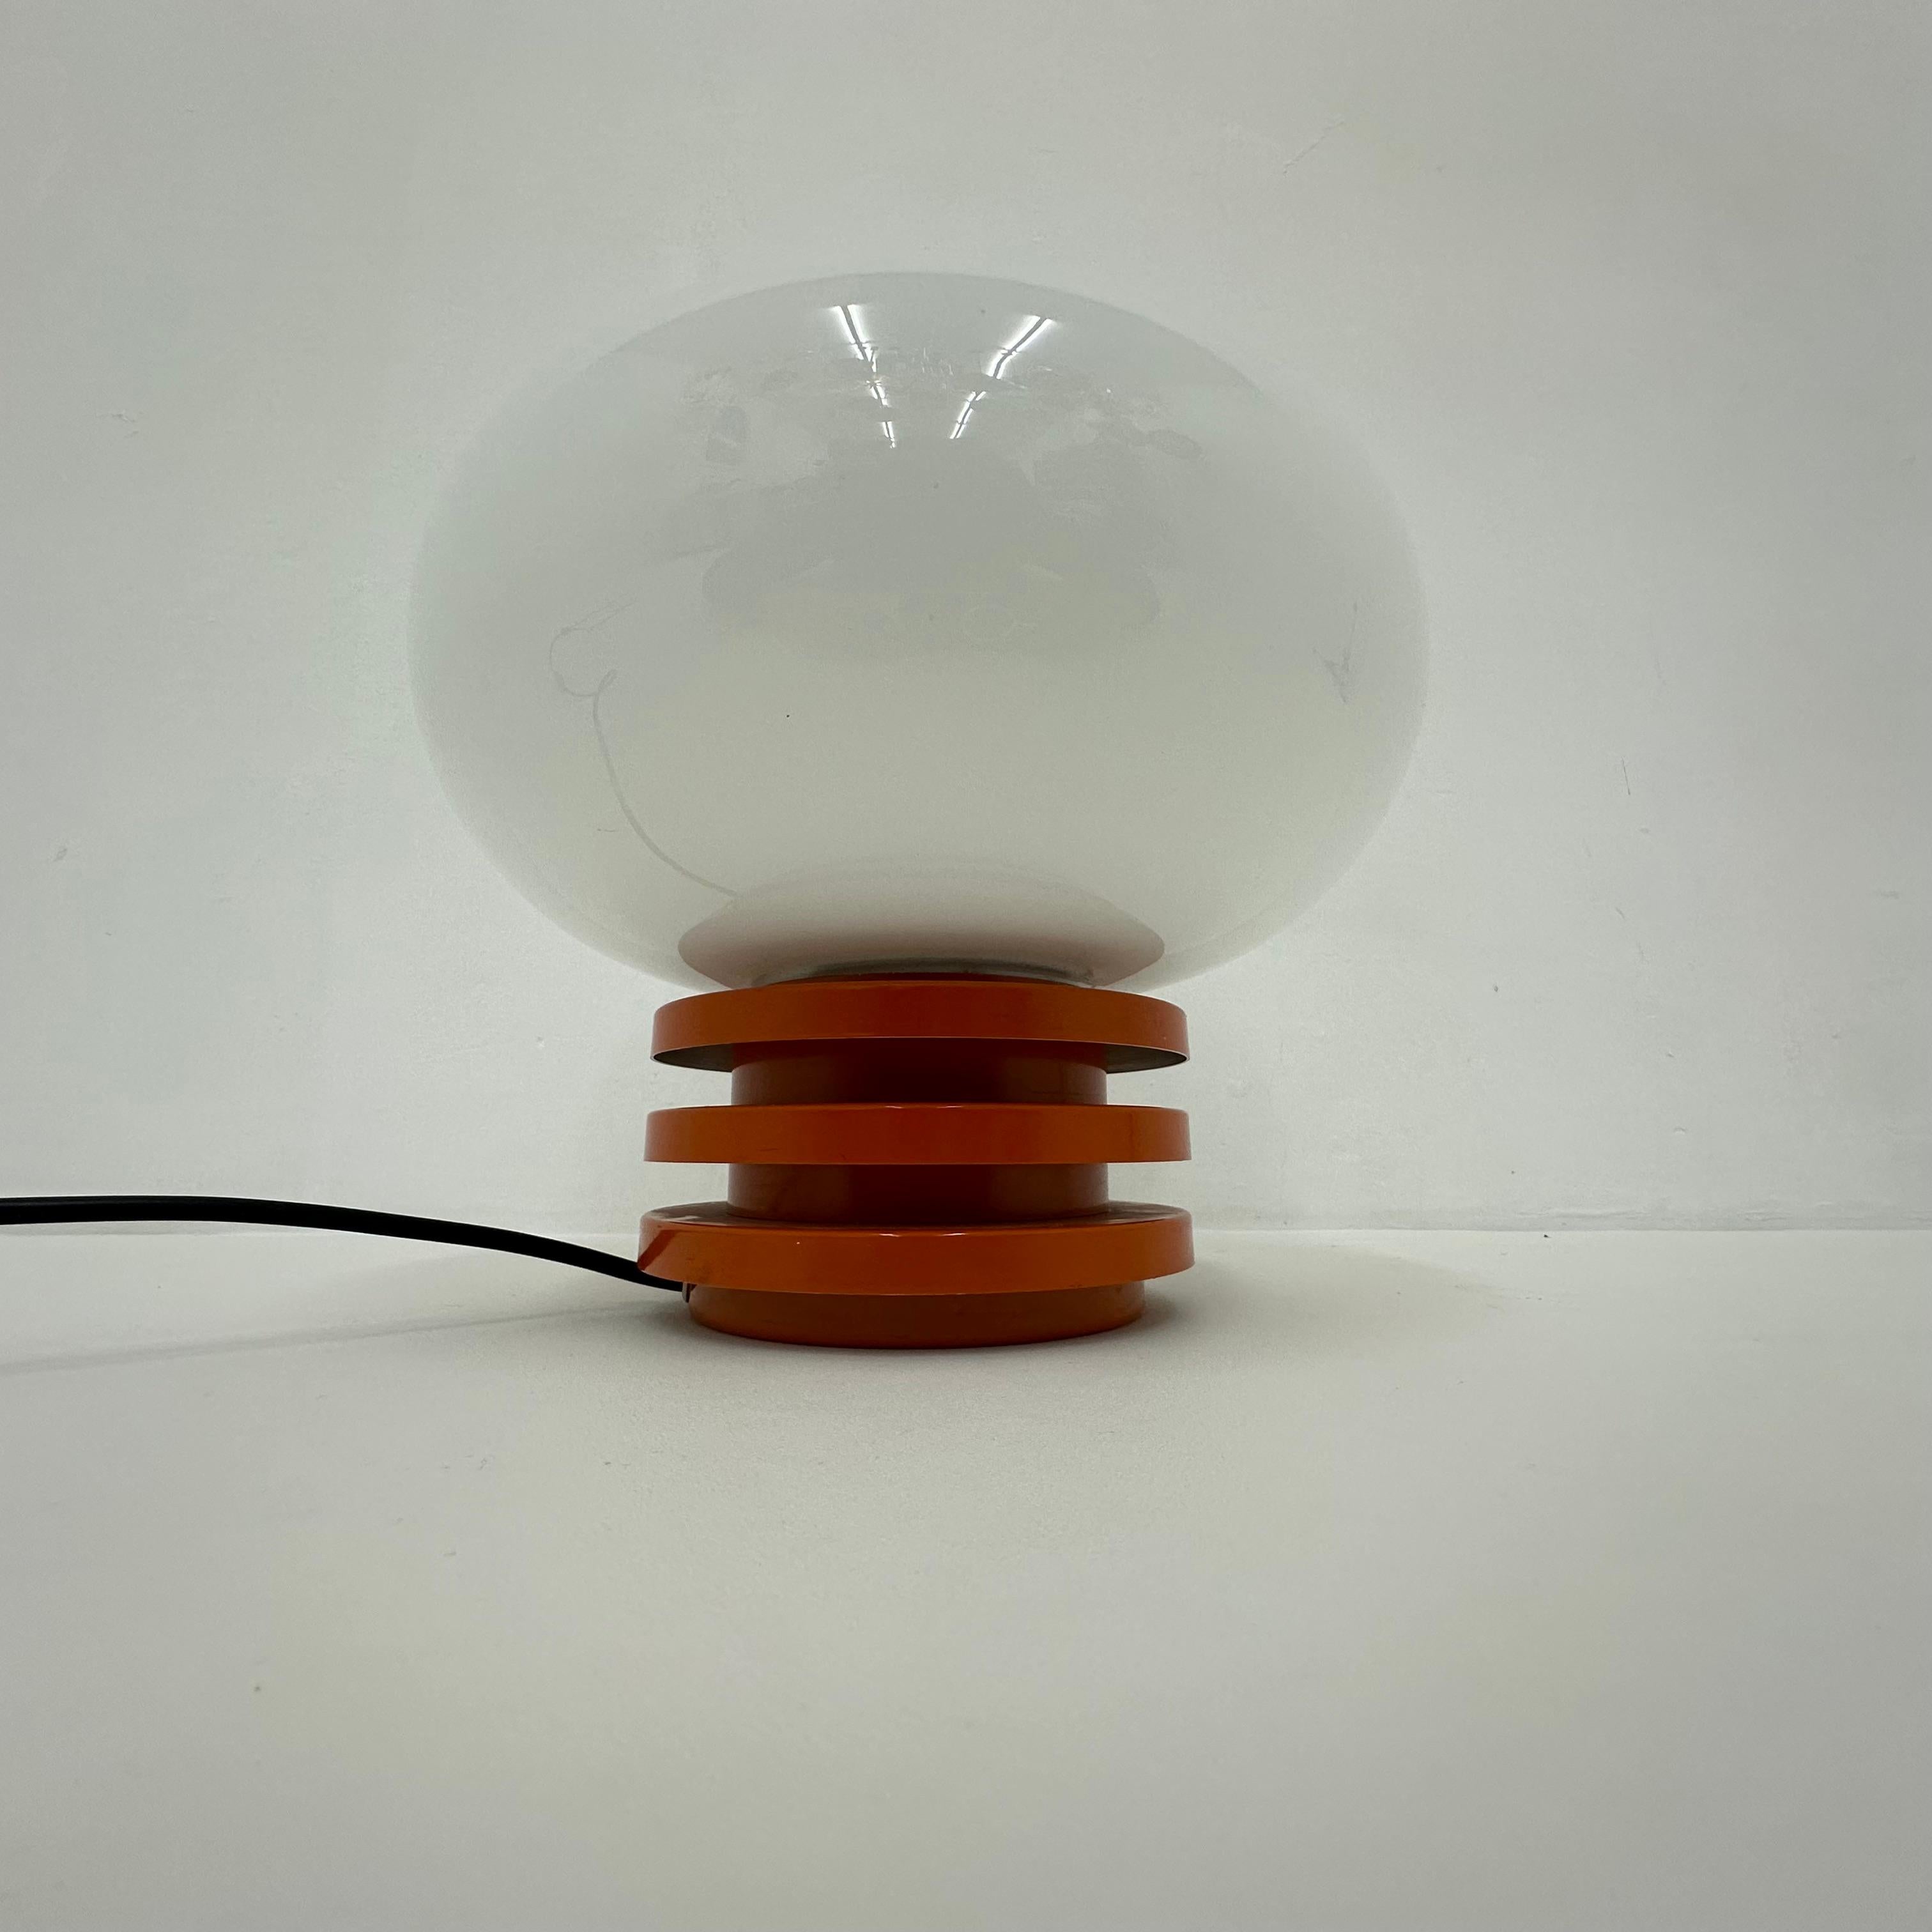 Abmessungen: 28cm H, 31cm Durchmesser
MATERIAL: Metall, Glas
Farbe: Orange , weiß